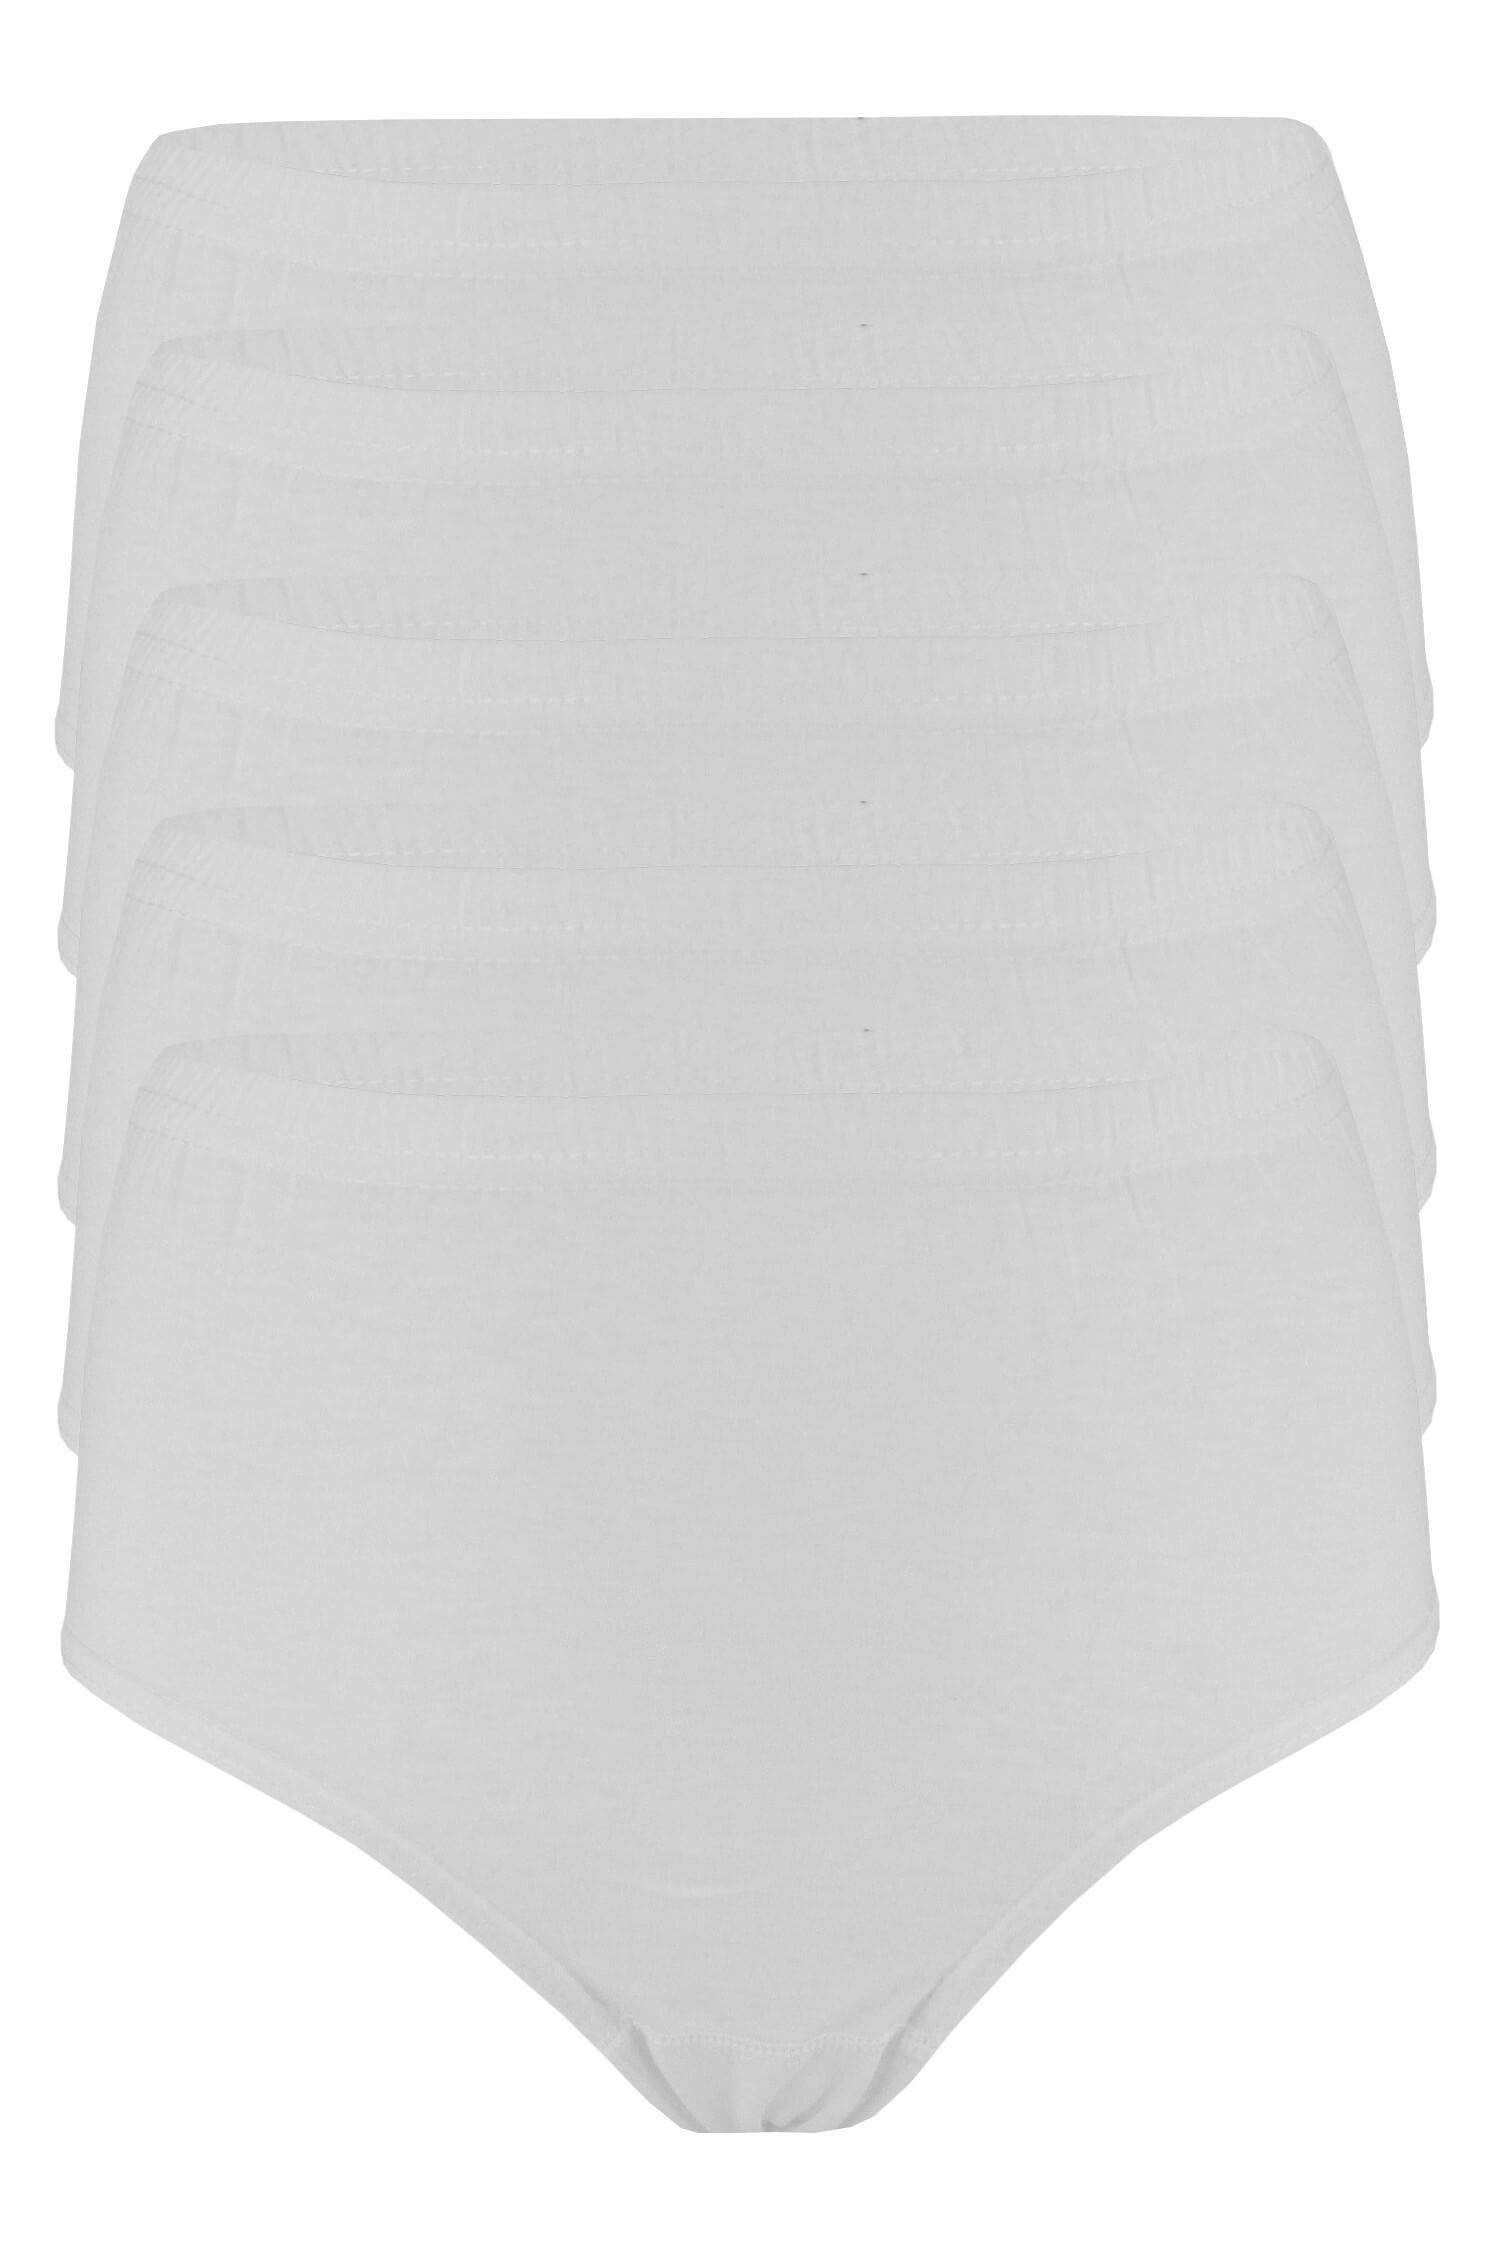 Daneta vyšší bavlněné kalhotky B5-5bal XL bílá